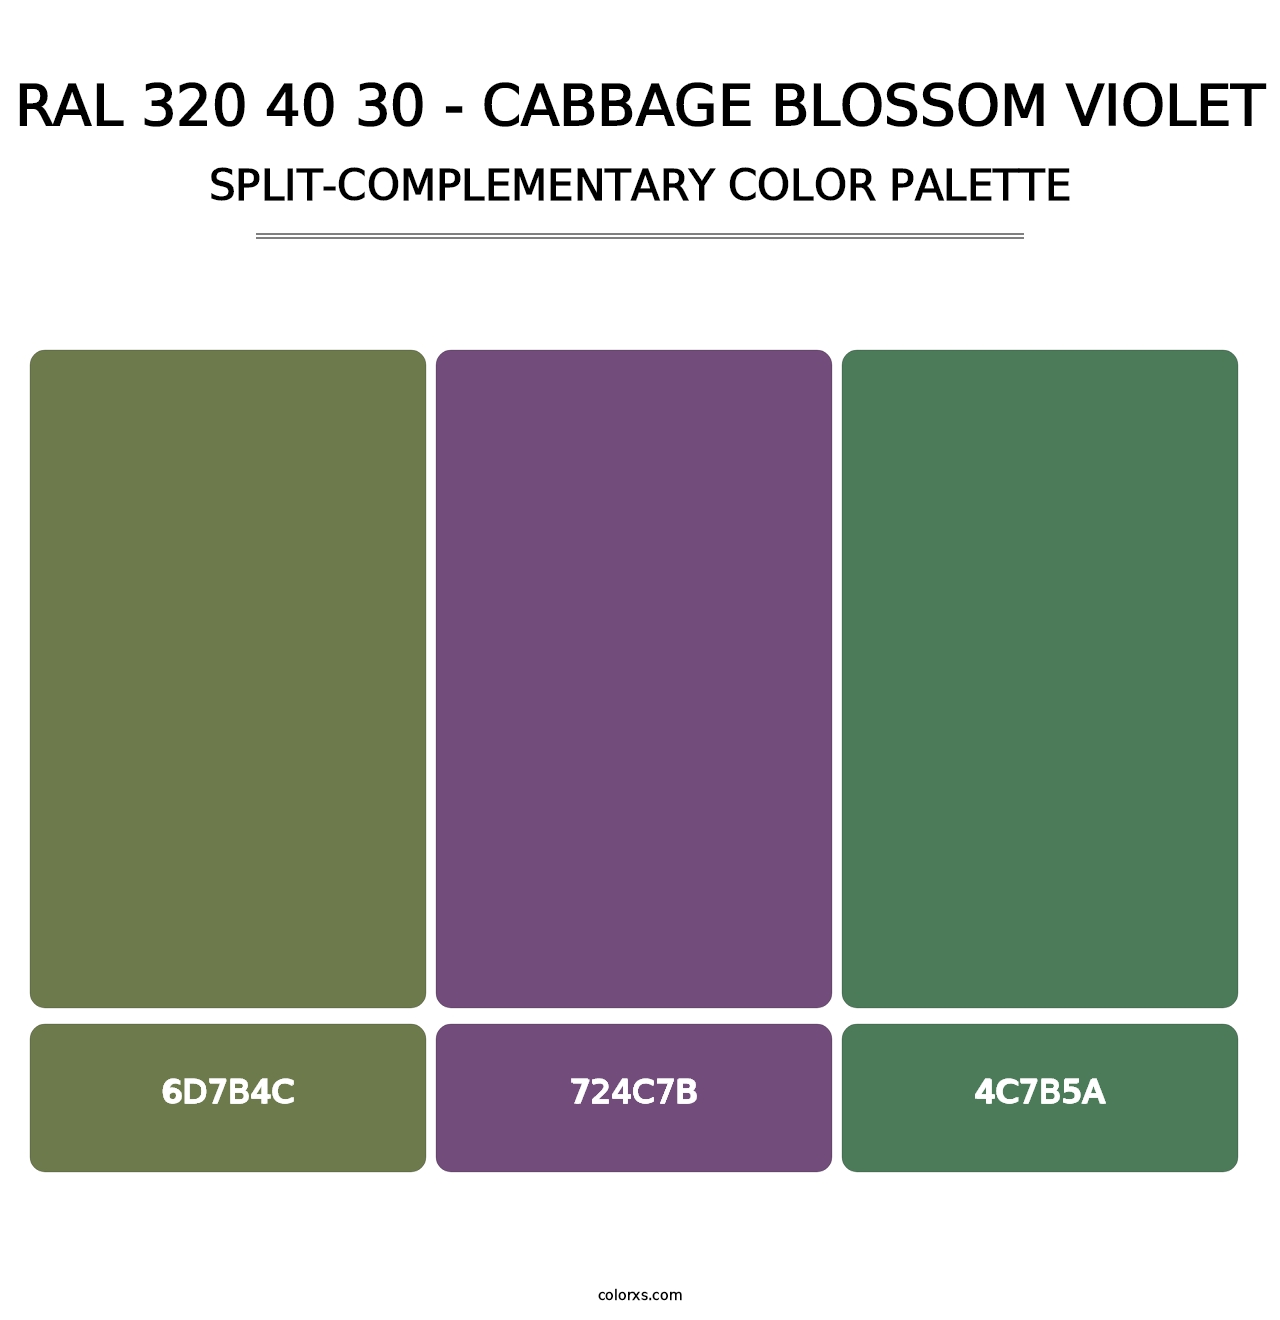 RAL 320 40 30 - Cabbage Blossom Violet - Split-Complementary Color Palette